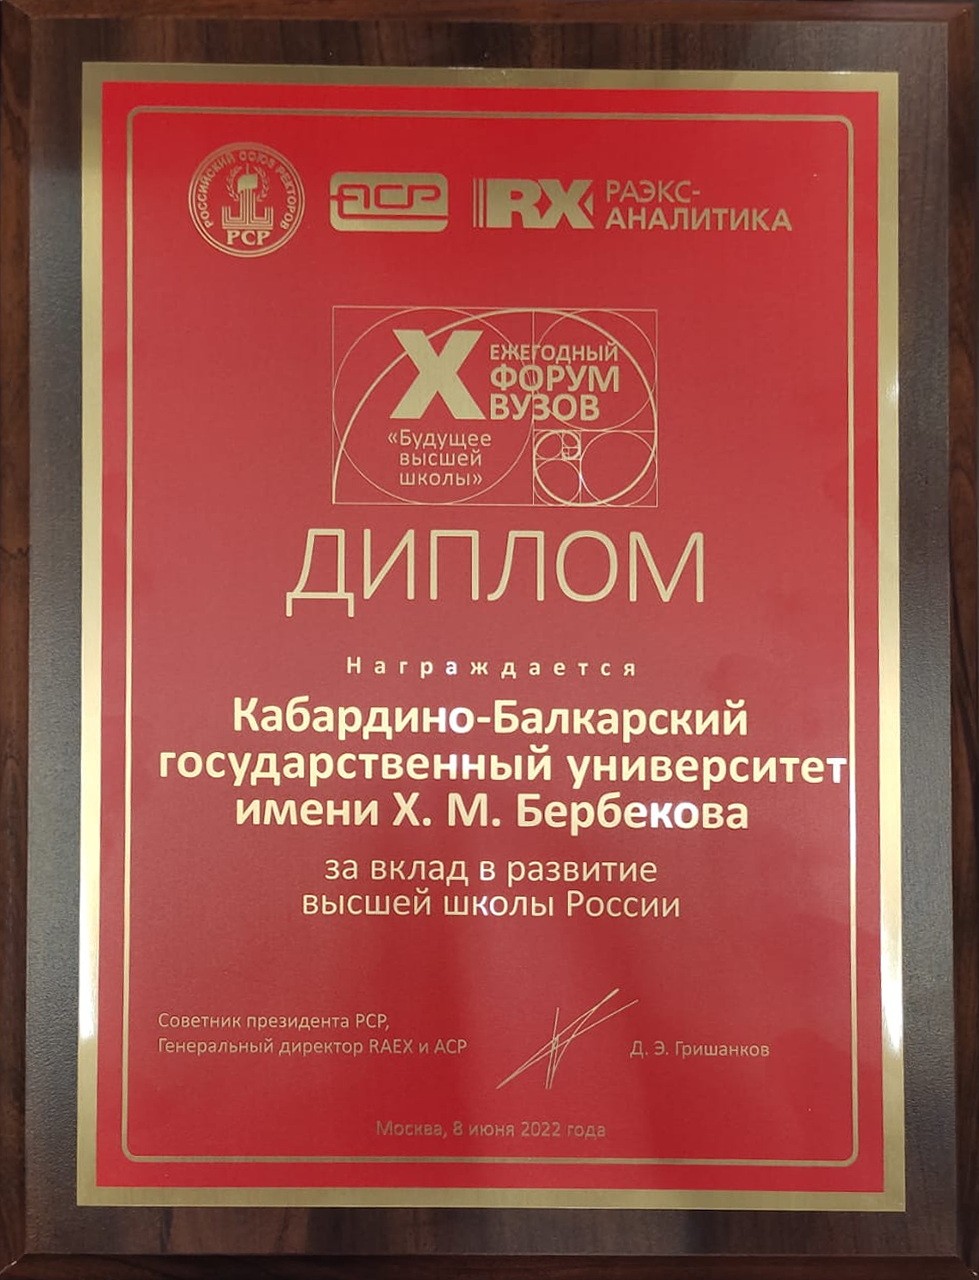 КБГУ награжден дипломом за вклад в развитие высшей школы России